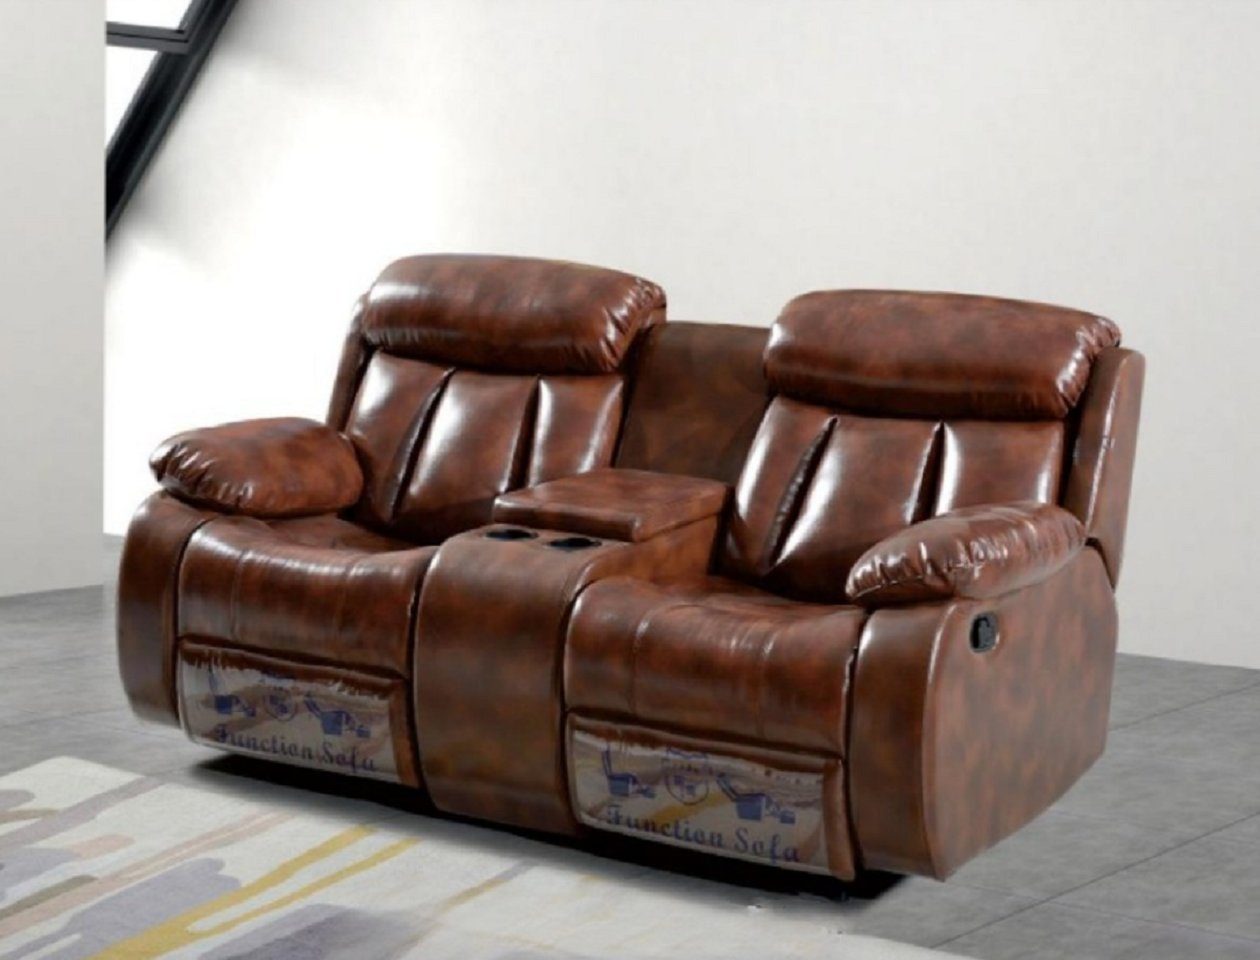 JVmoebel 2-Sitzer Braun Sofa 2 Sitzer Polster Designer Relax Funktion Wohnzimmer Neu, 1 Teile, mit Relaxfunktion